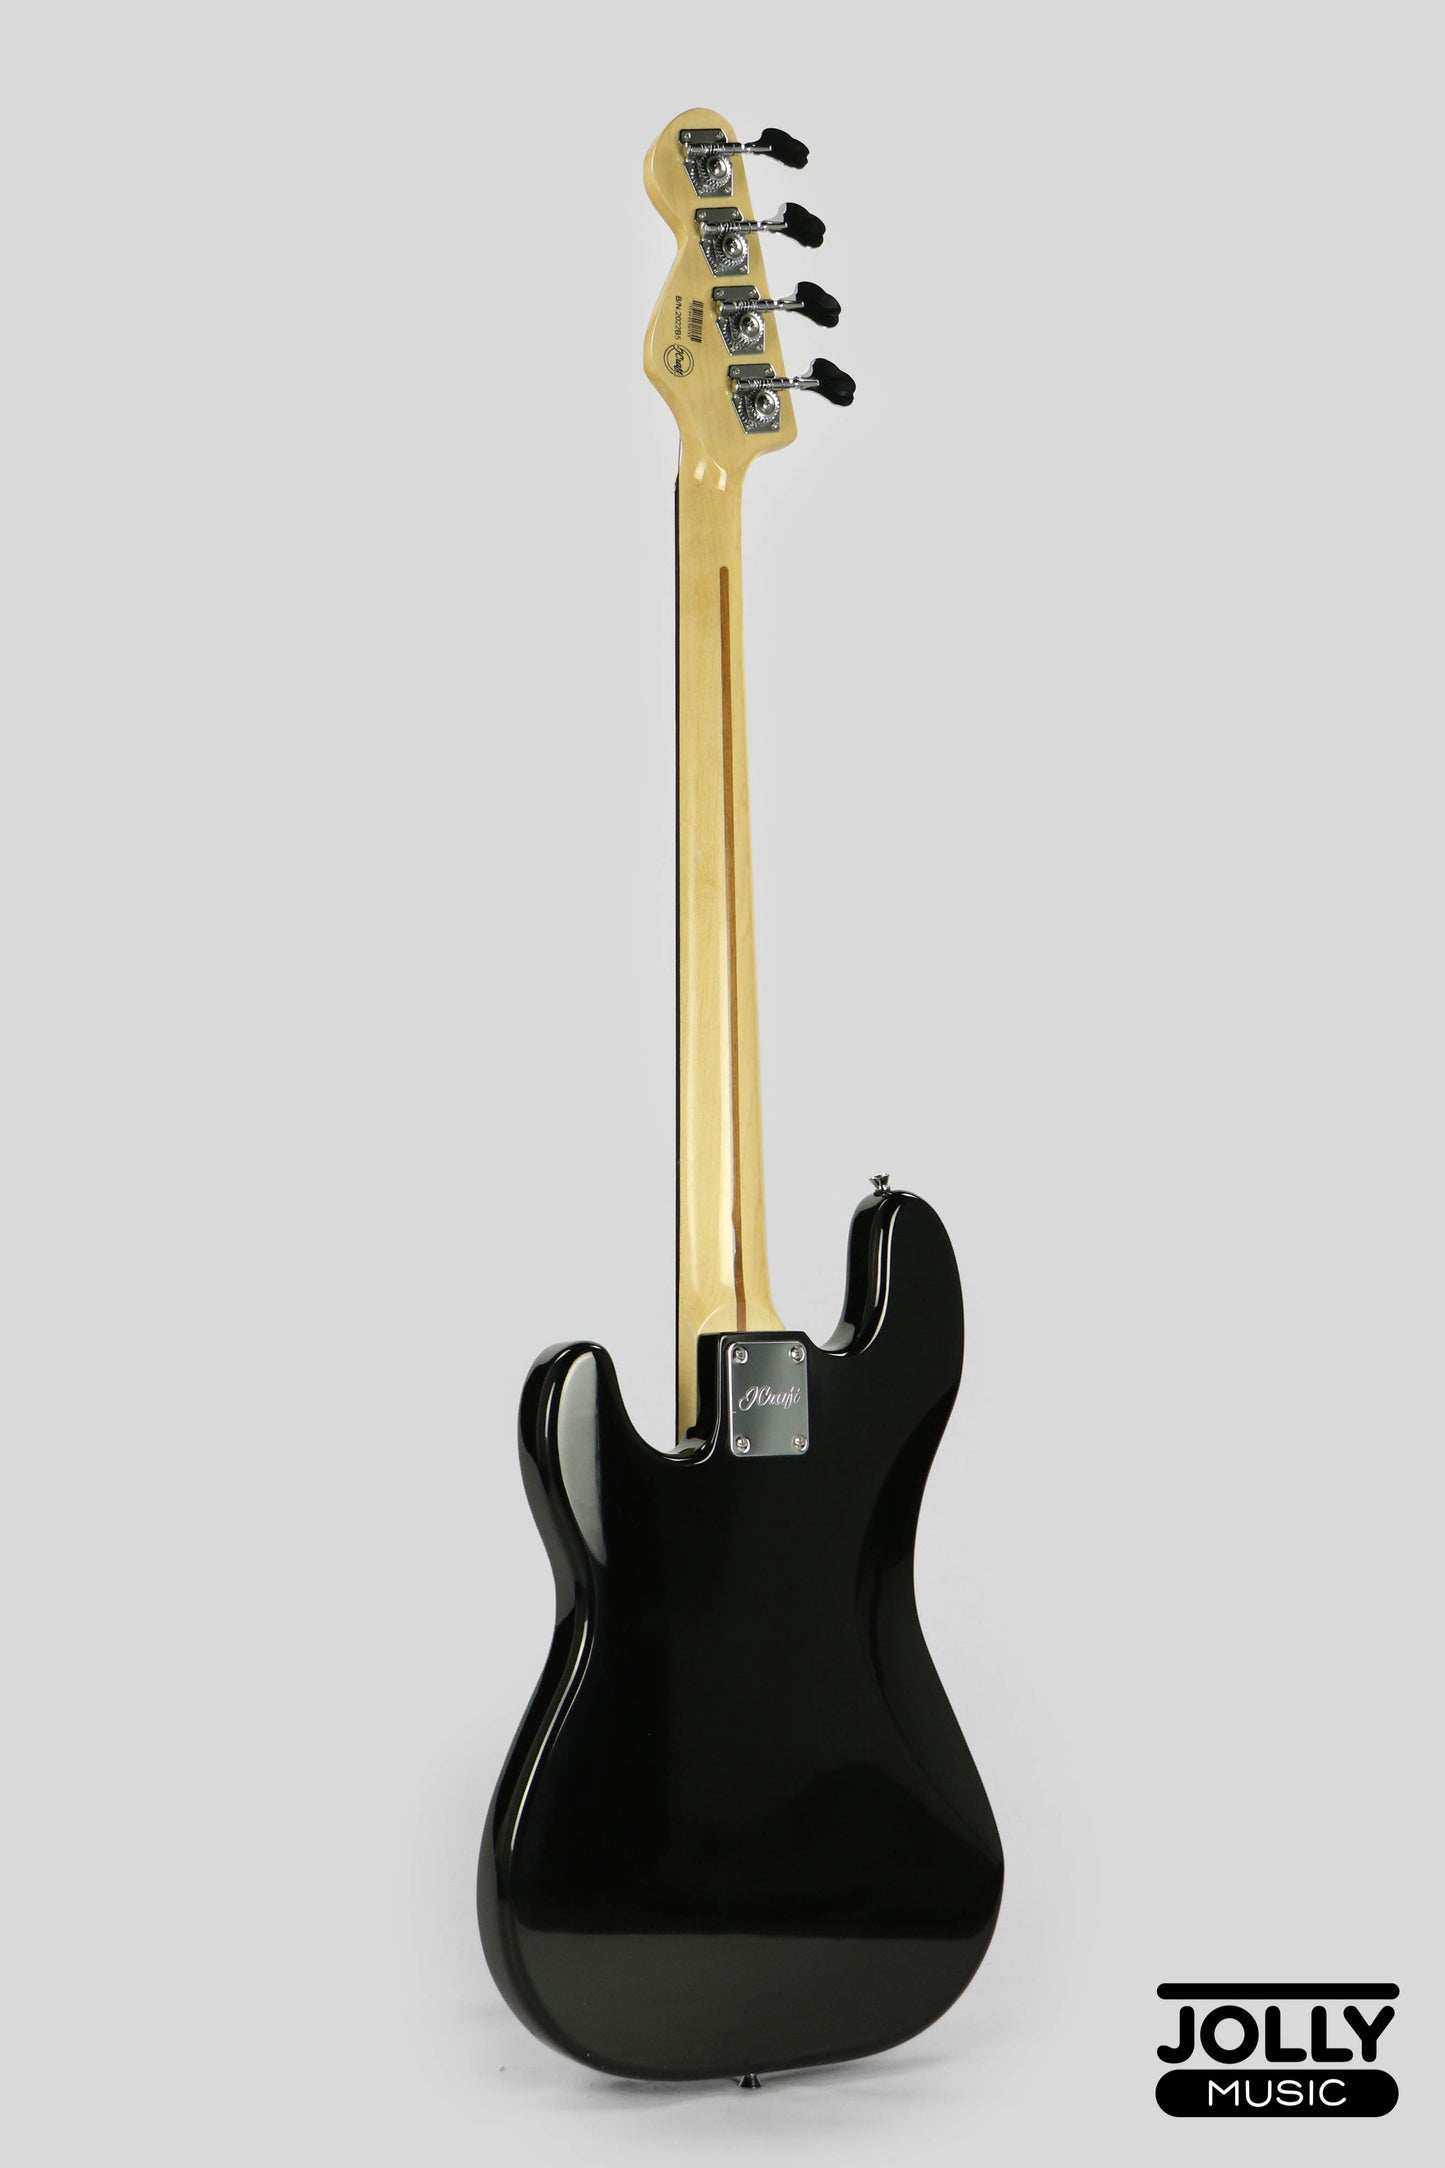 JCraft PB-2 4-String Bass Guitar - Black